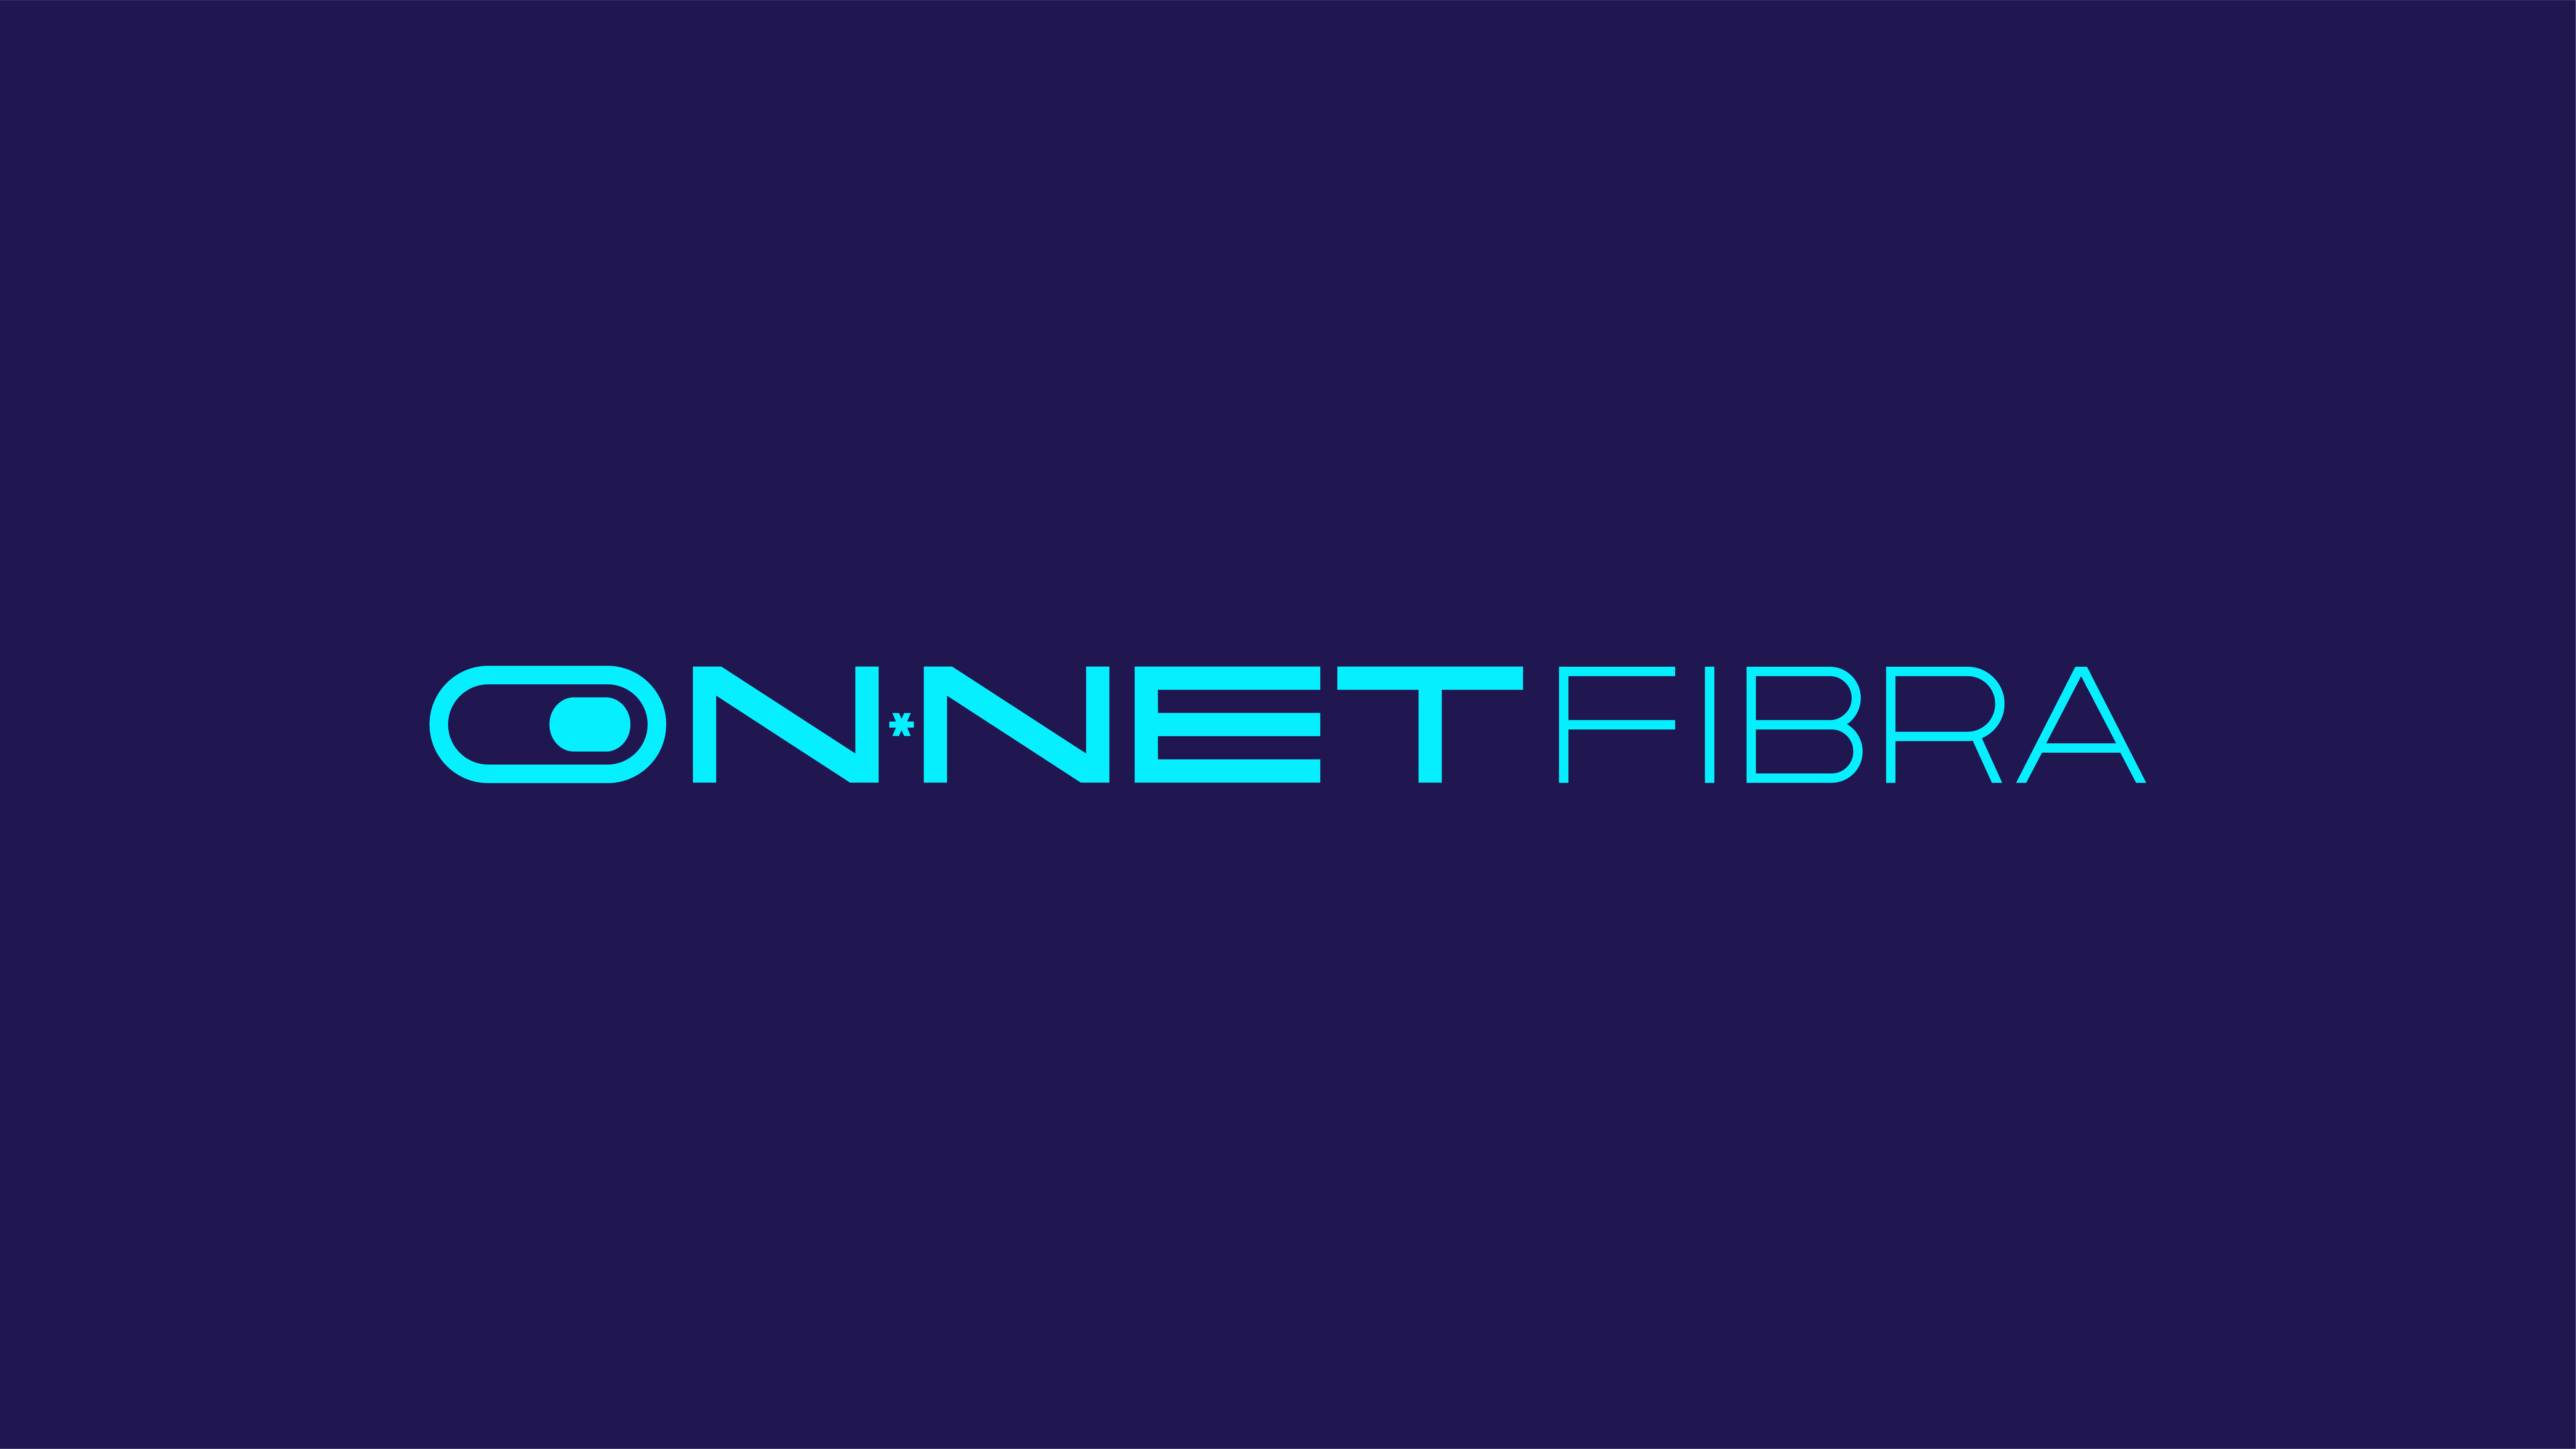 ON*NET Fibra Colombia anunció su lanzamiento como la más grande red nacional independiente de acceso abierto de fibra óptica